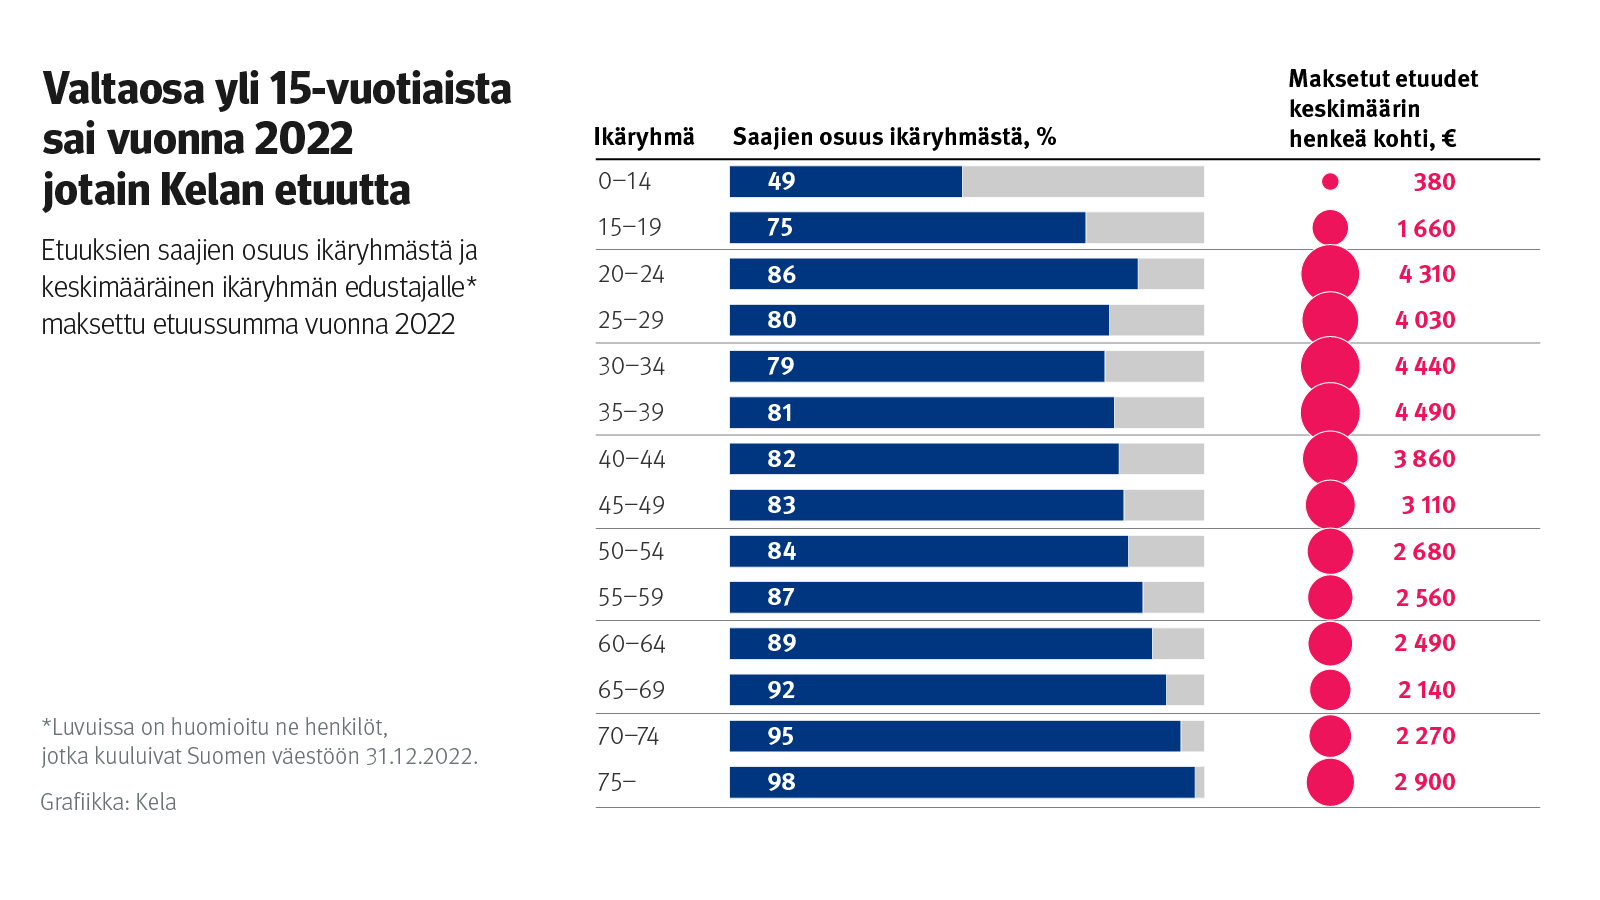 Infograafi näyttää, että valtaosa yli 15-vuotiaista suomalaisista sai vuonna 2022 Kelan etuuksia. Yli 35-vuotiaiden ikäryhmissä etuuksia saaneiden osuus kasvaa jatkuvasti ja yli 75-vuotiaista jo 98 % sai jotain Kelan etuuksia. Henkeä kohti etuuksia maksettiin eniten 34-39-vuotiaille, jotka saivat keskimäärin 4 490 euroa etuuksia vuoden aikana. Selvästi eniten etuuksia saatiin 20-44-vuotiaiden ikäryhmissä.